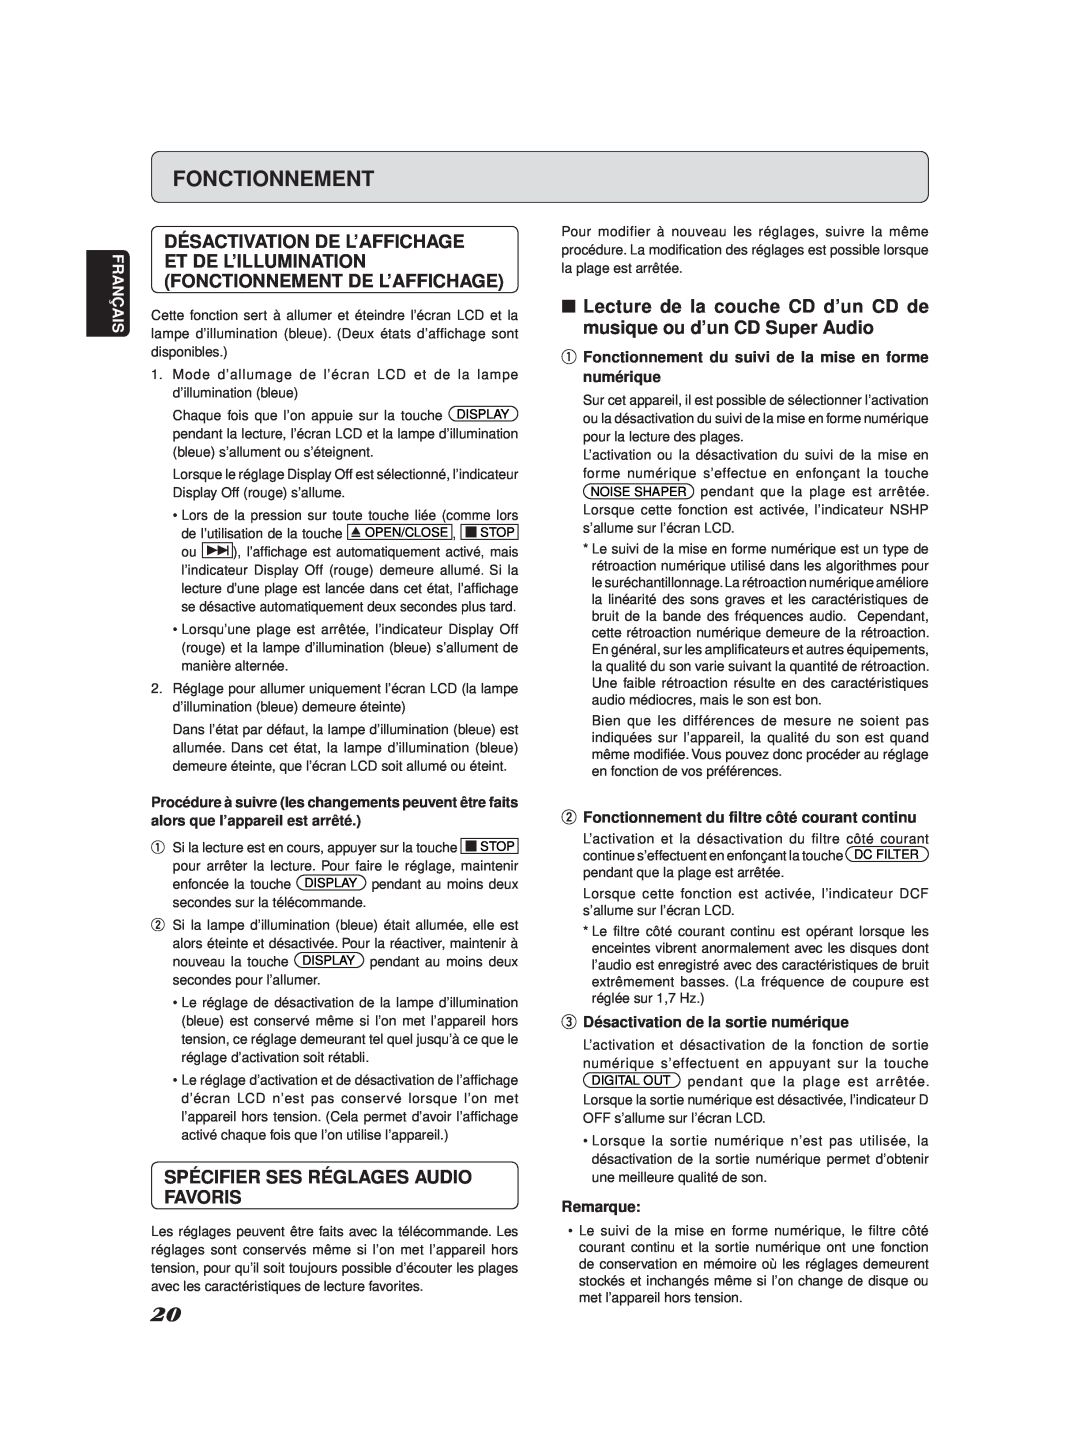 Marantz SA-11S2 manual Spécifier Ses Réglages Audio Favoris, Fonctionnement 